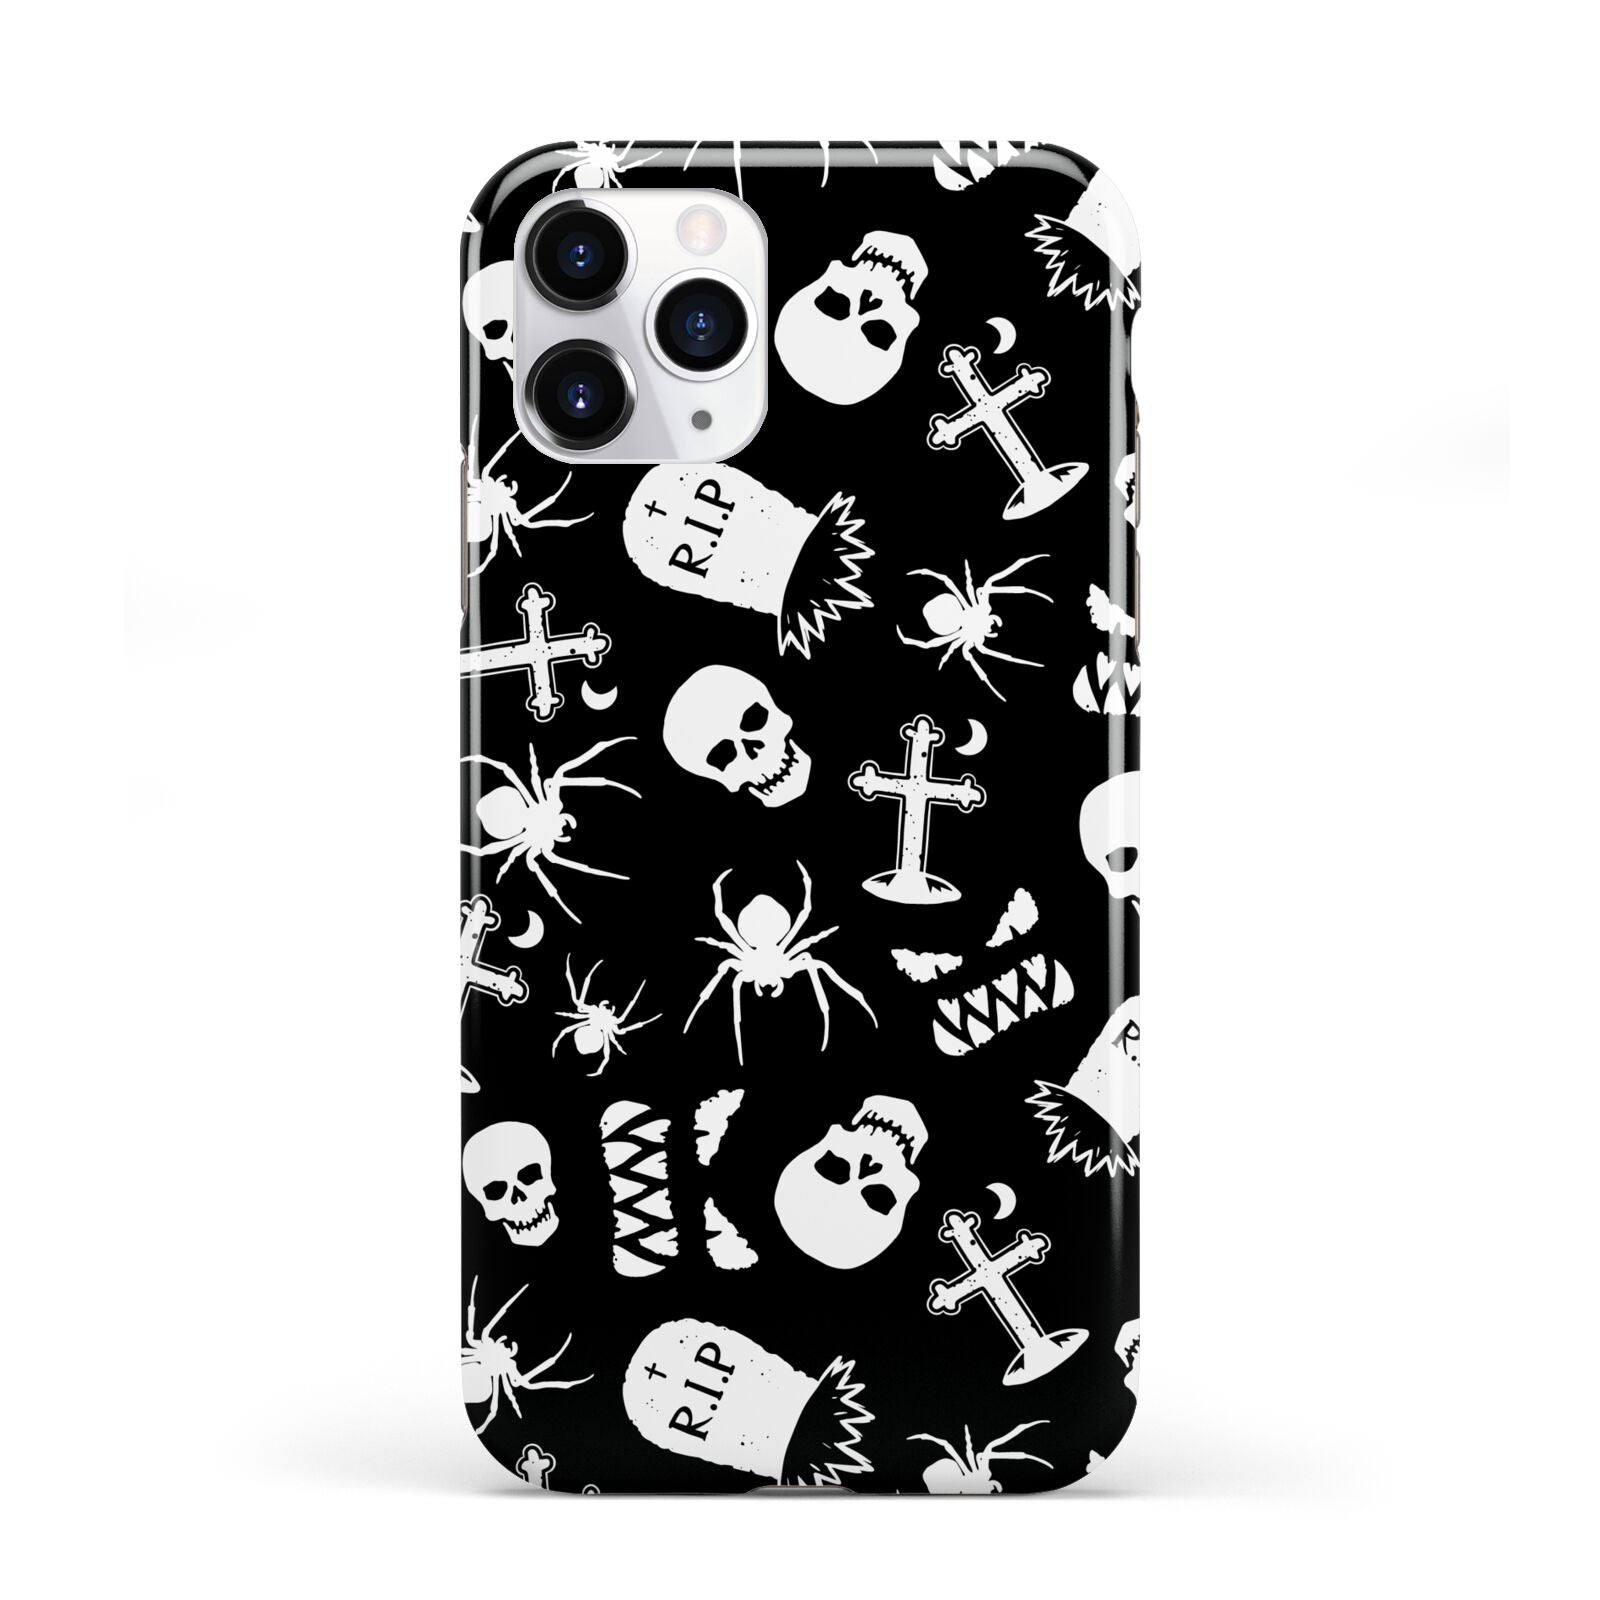 Spooky Illustrations iPhone 11 Pro 3D Tough Case